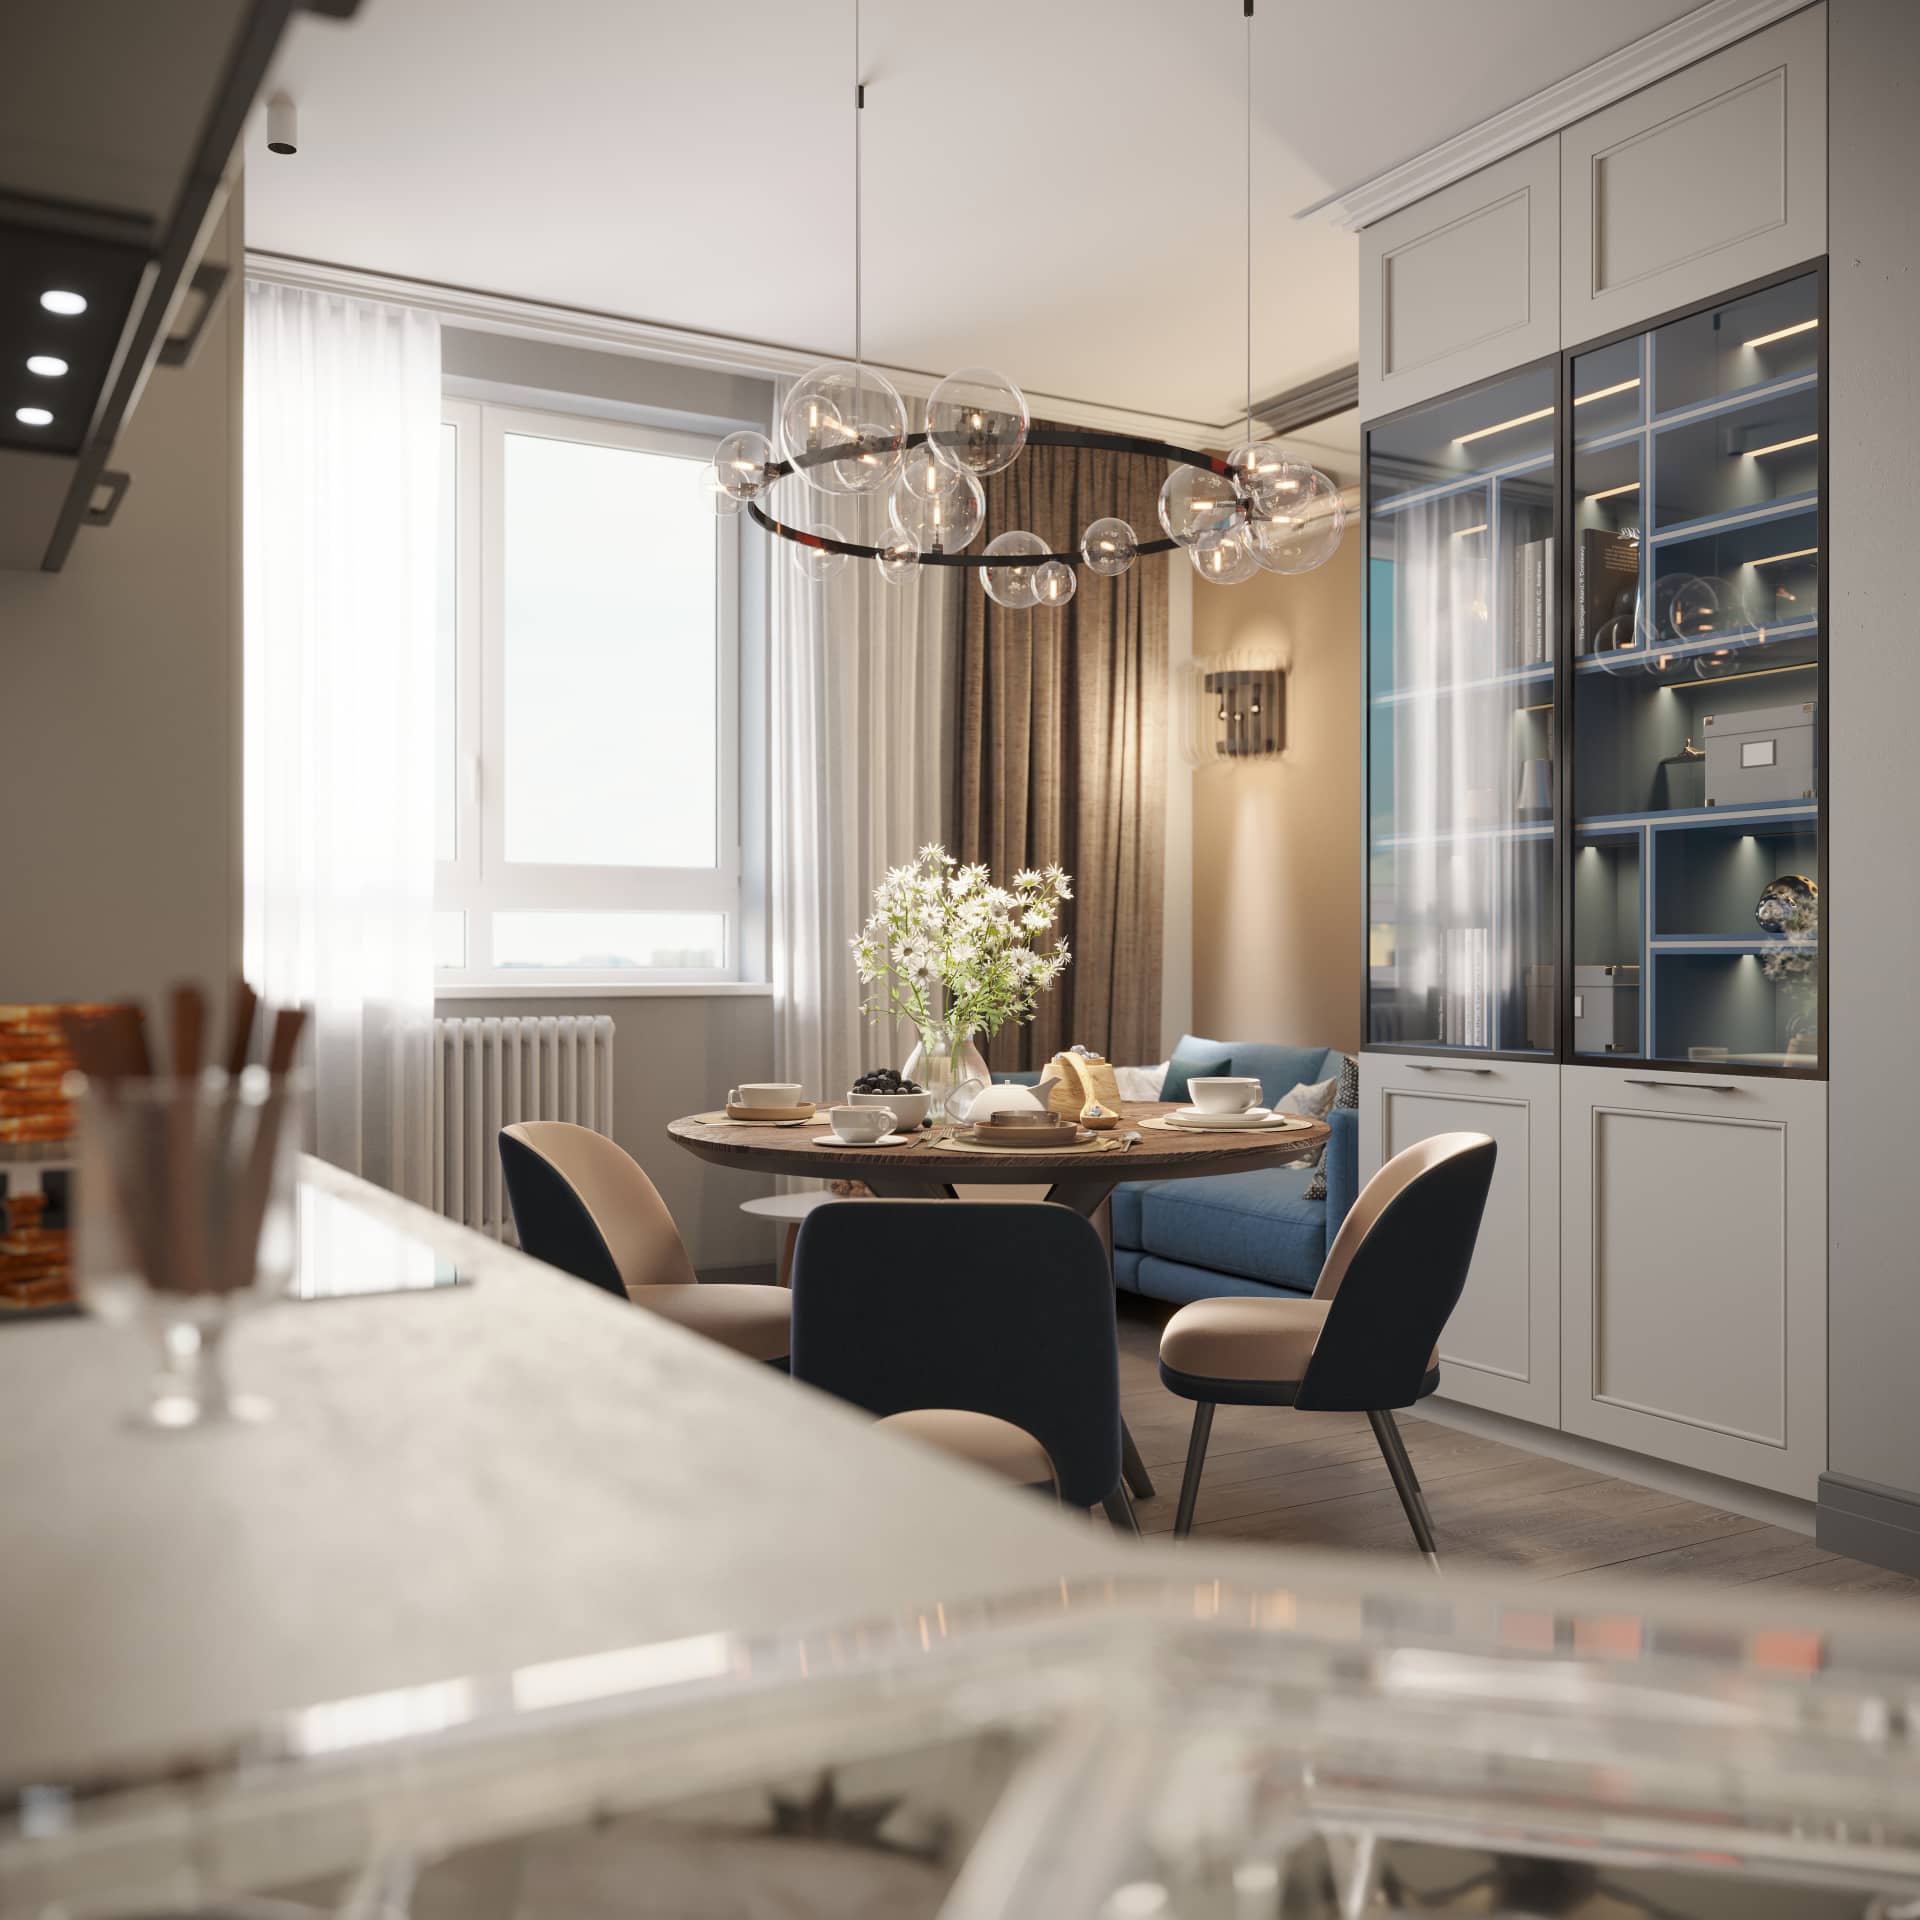 Оформление интерьера кухни трехкомнатной квартиры в скандинавском стиле. Фото № 62171.